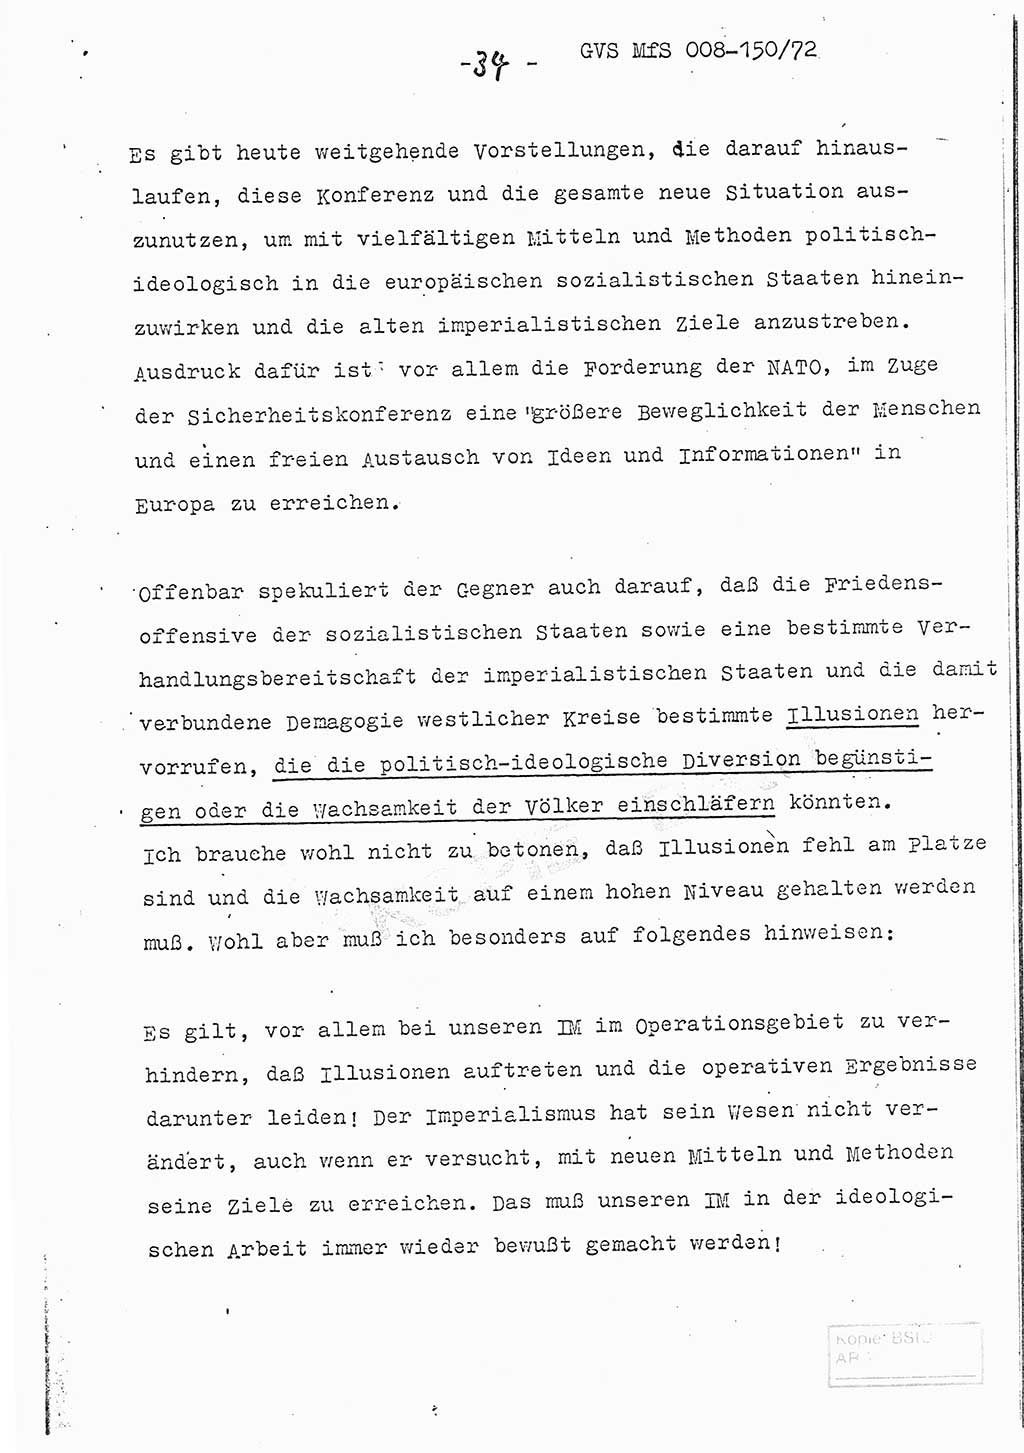 Referat (Entwurf) des Genossen Minister (Generaloberst Erich Mielke) auf der Dienstkonferenz 1972, Ministerium für Staatssicherheit (MfS) [Deutsche Demokratische Republik (DDR)], Der Minister, Geheime Verschlußsache (GVS) 008-150/72, Berlin 25.2.1972, Seite 34 (Ref. Entw. DK MfS DDR Min. GVS 008-150/72 1972, S. 34)